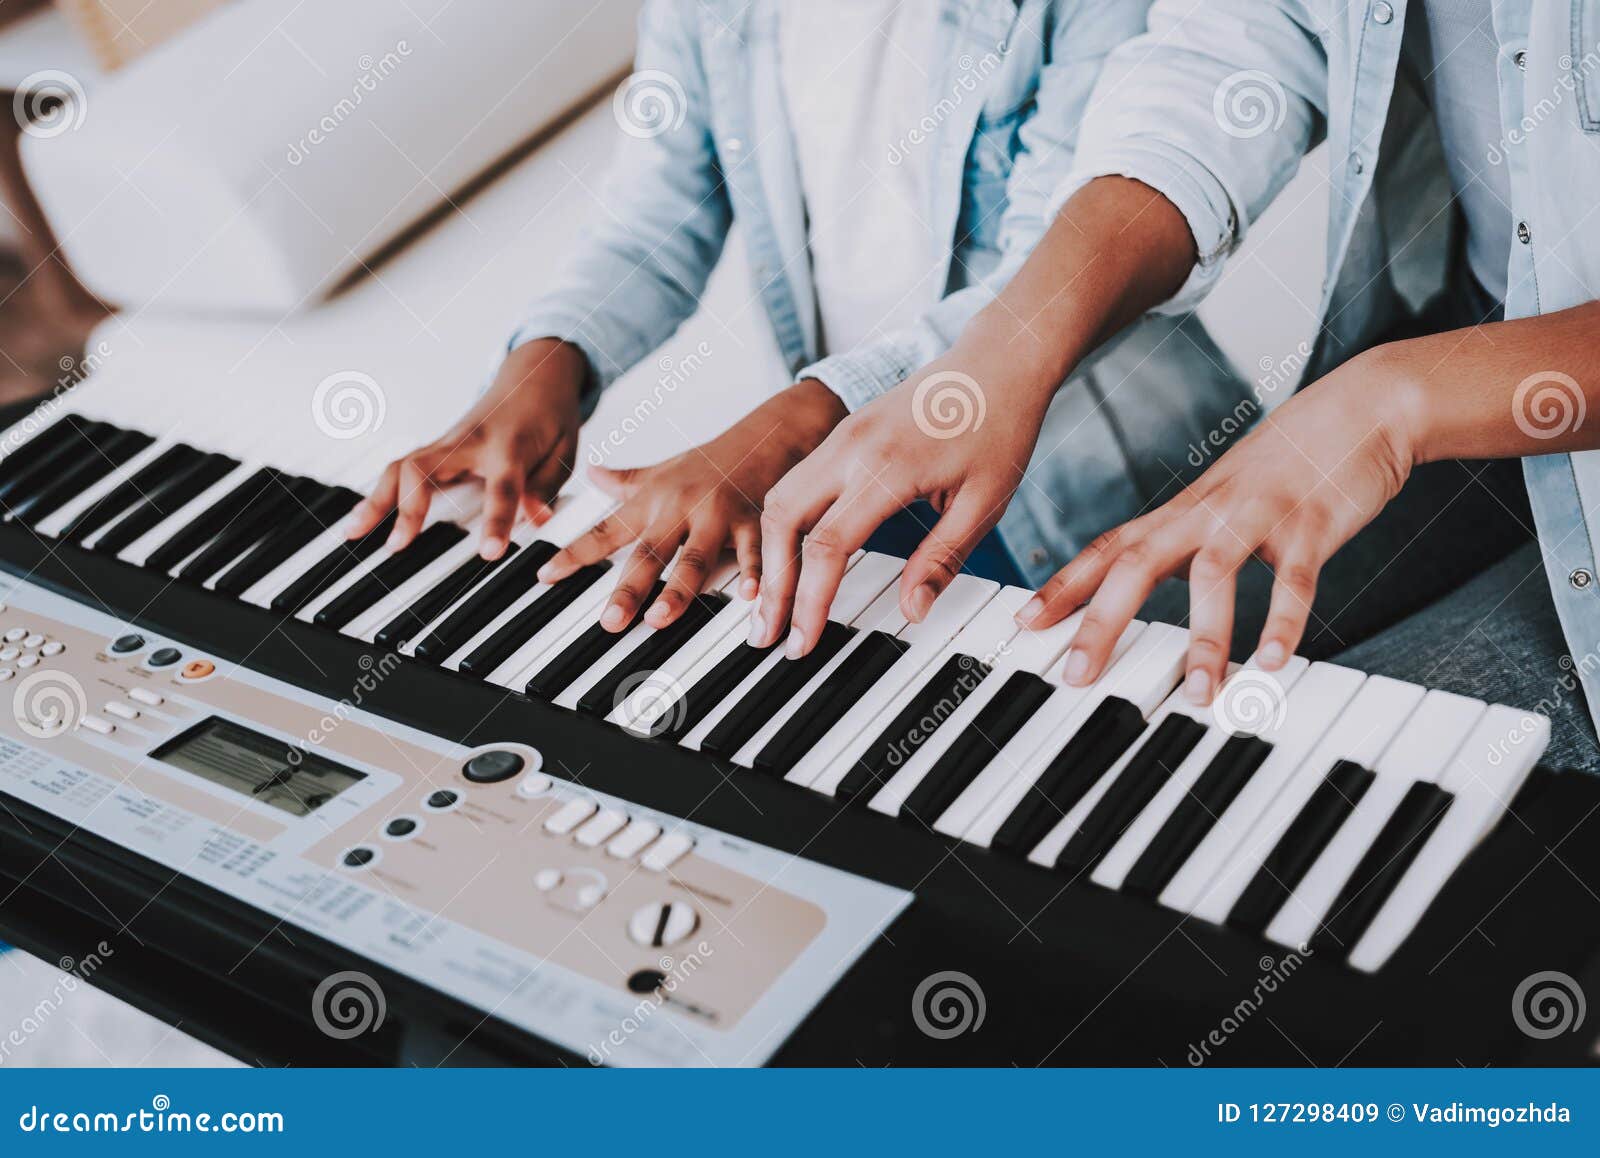 Jogos de piano: jogue jogos de piano gratuitamente